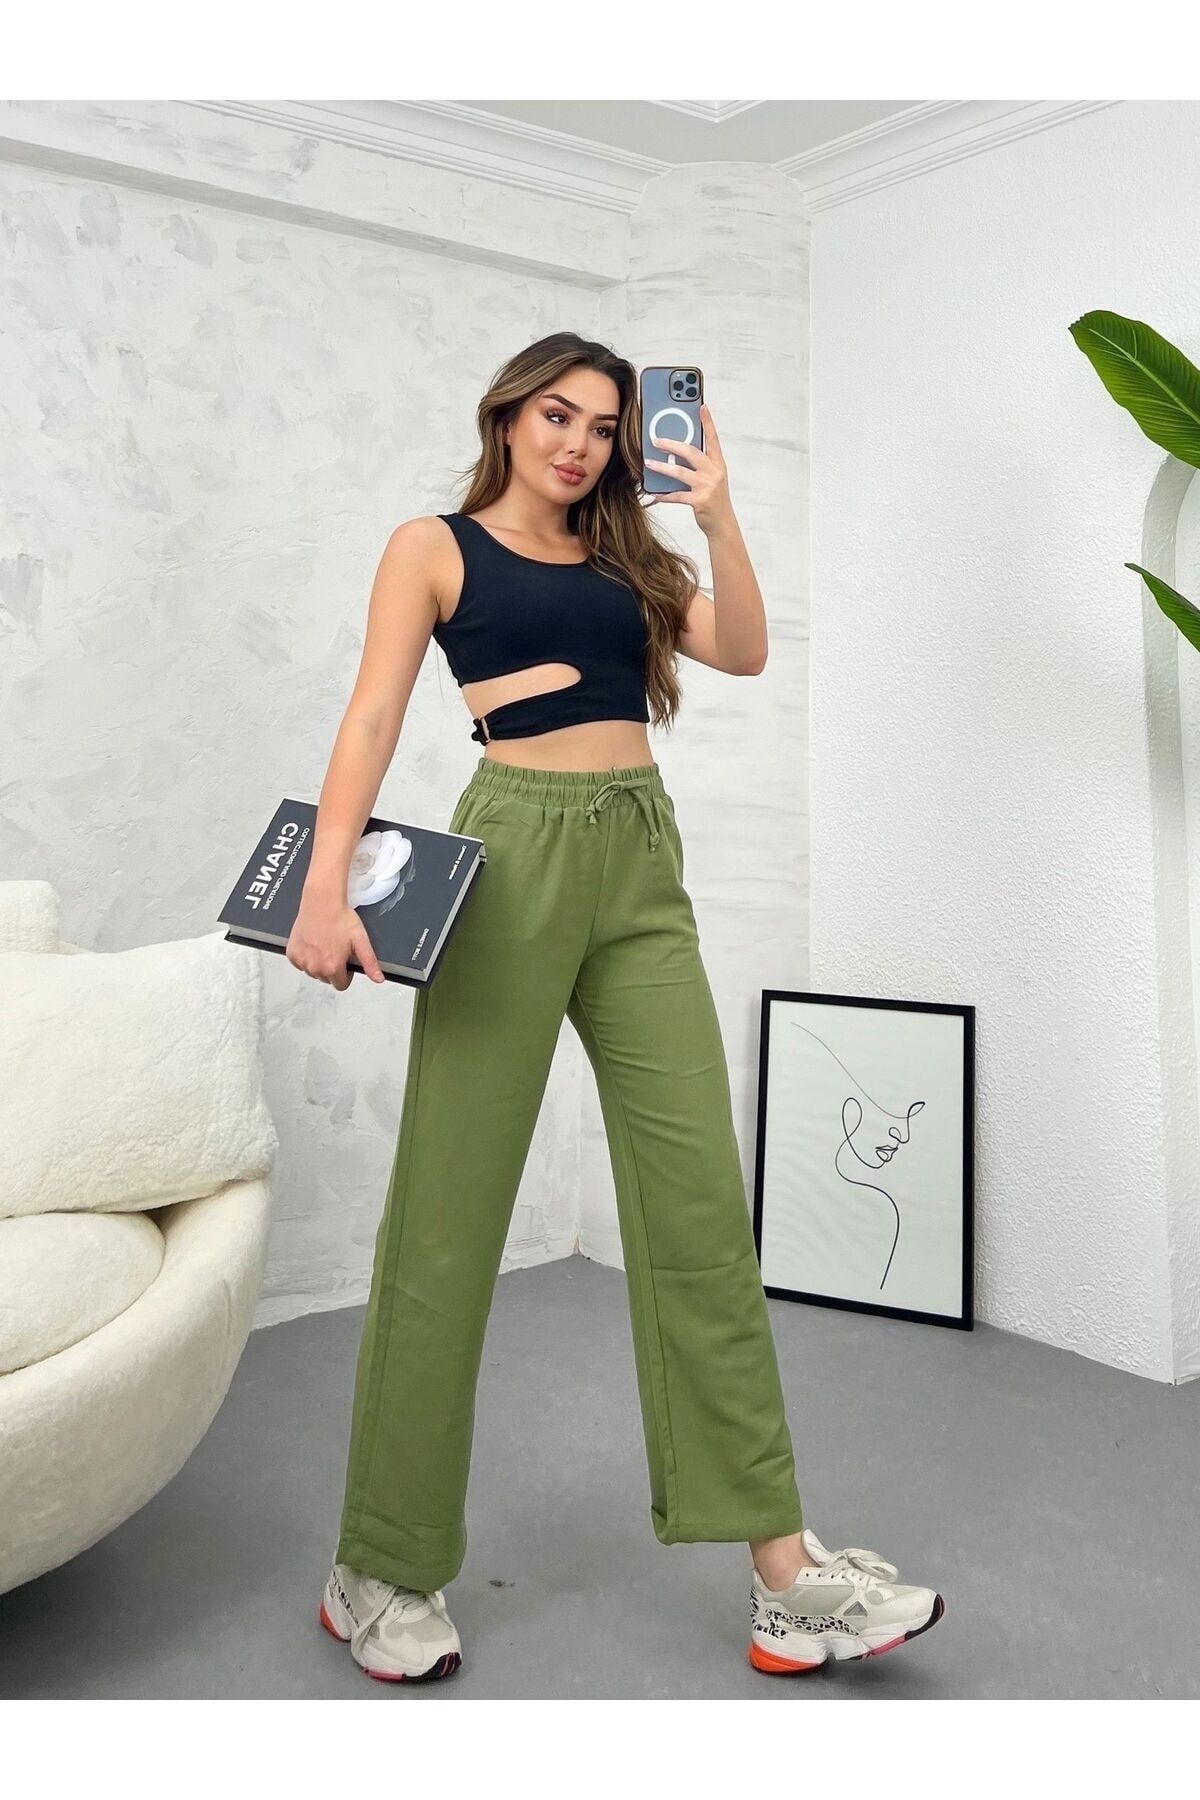 Ozy Fashion Yüksek Bel,Beli Lastikli,Cepli Flamlı Keten Bol Paça Yazlık Haki Yeşil Pantolon